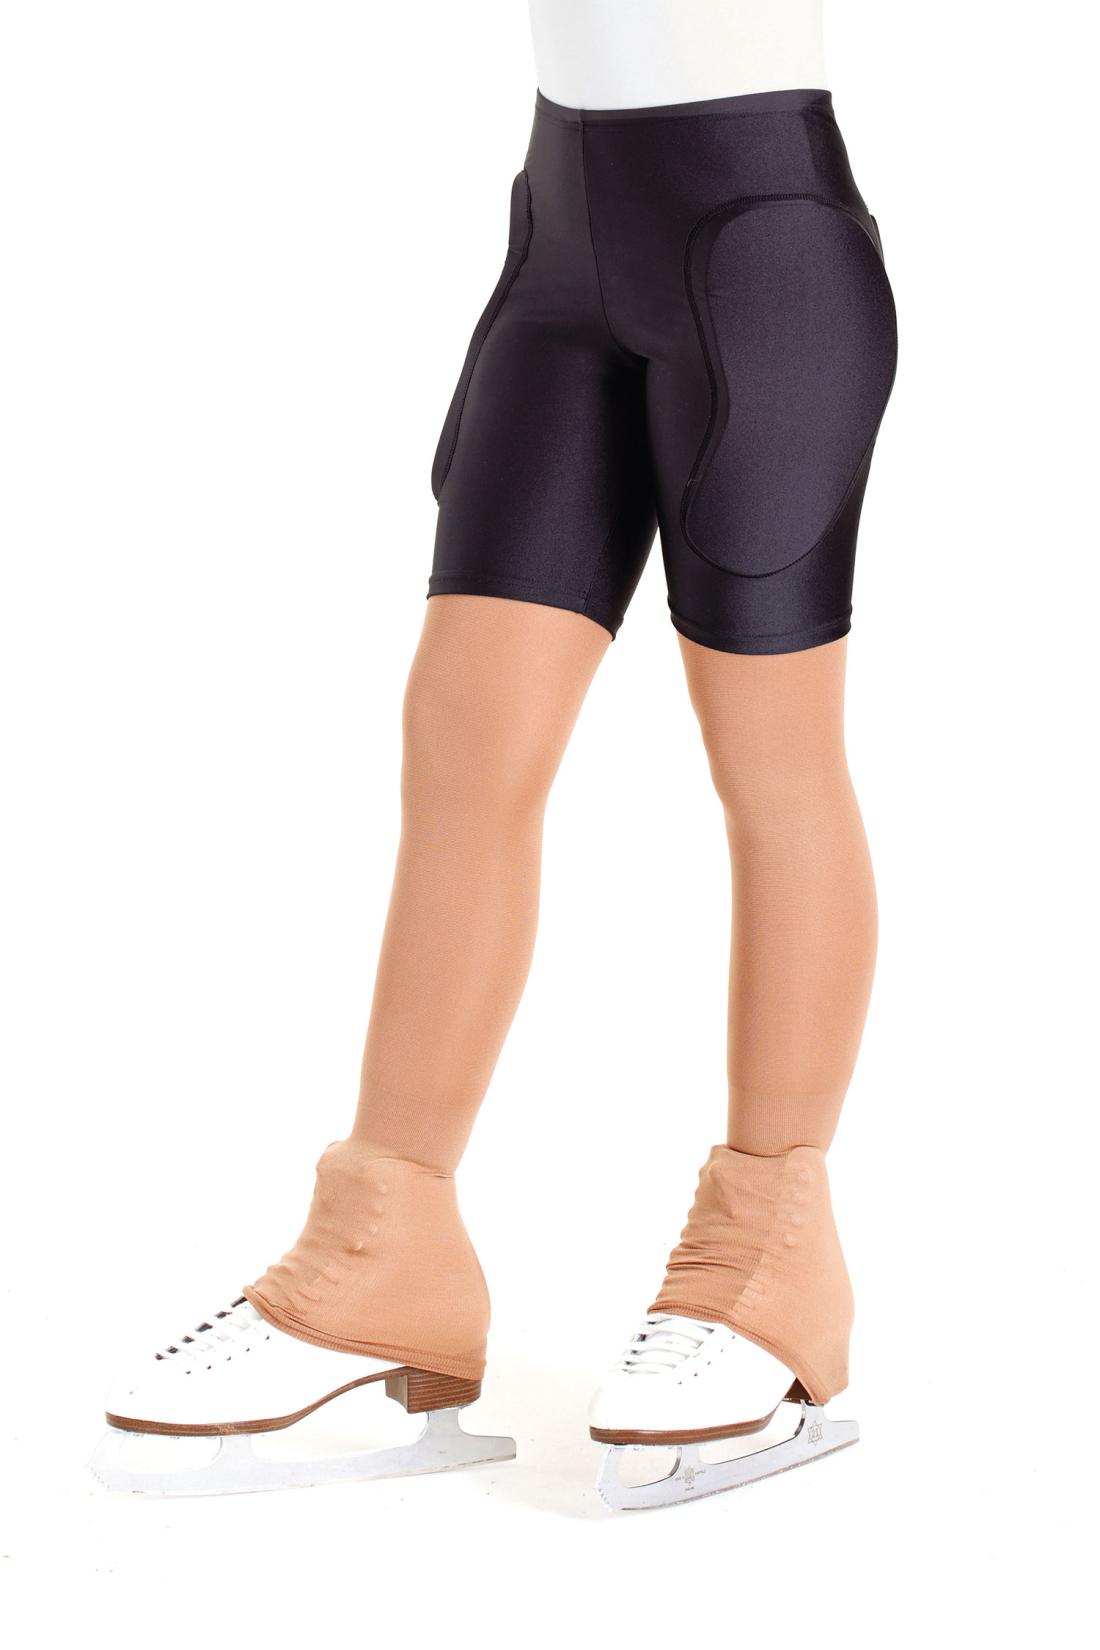 Pantalón Protector Acolchado de Patinaje Intermezzo estilo Ciclista